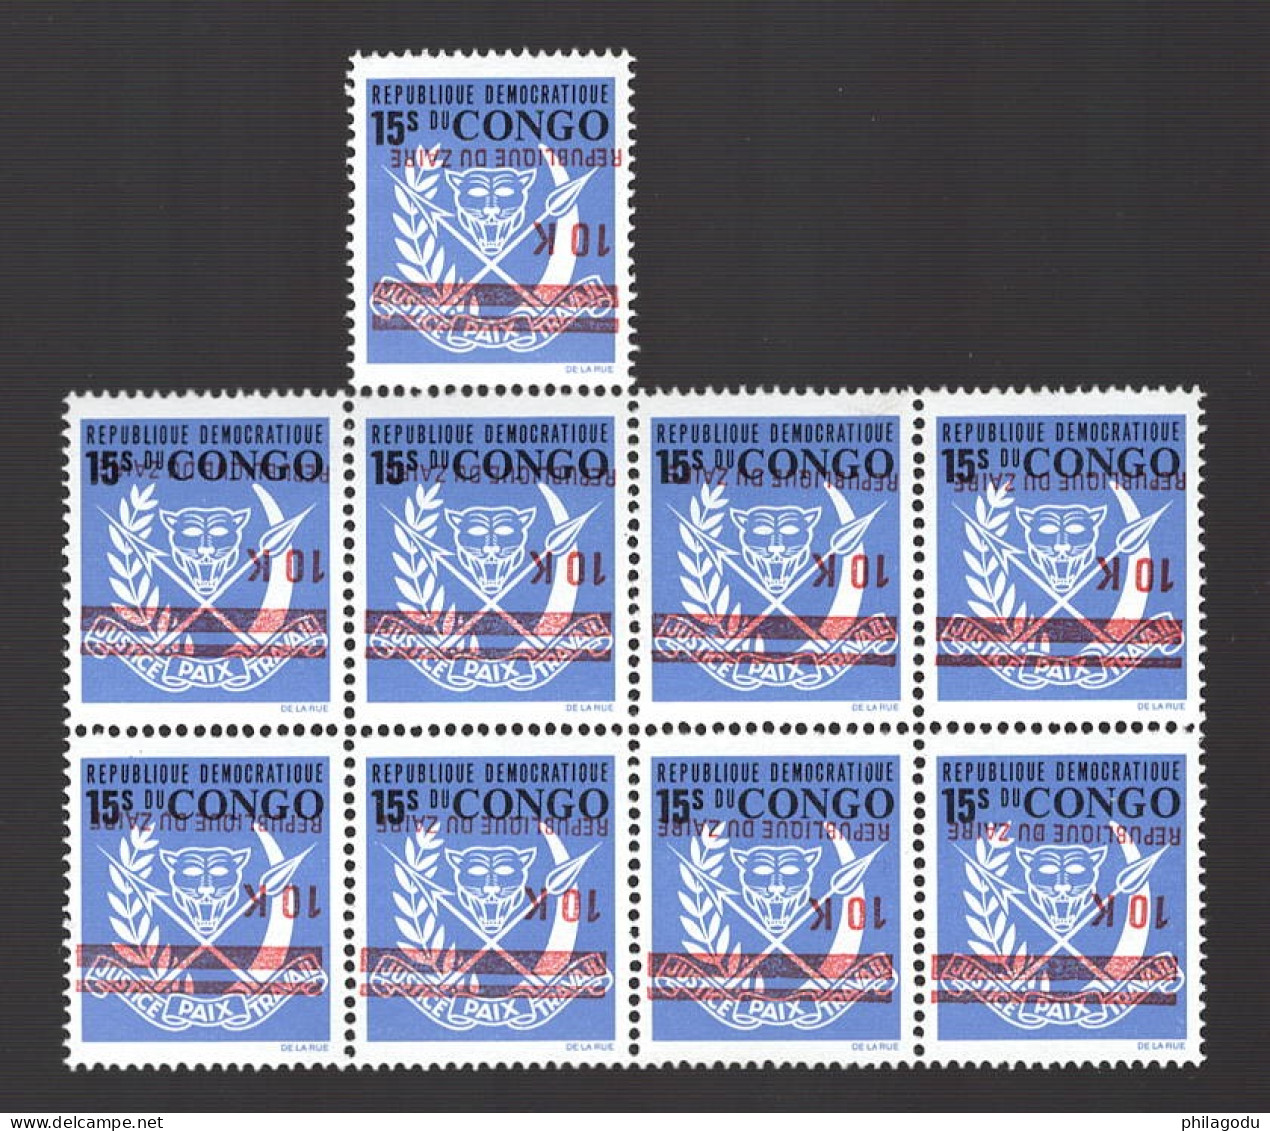 1977  Wappen Armoiries   913**  Surcharge Renversée  Inverted Overprint    **. Postfris Bloc De 8+1 - Nuovi